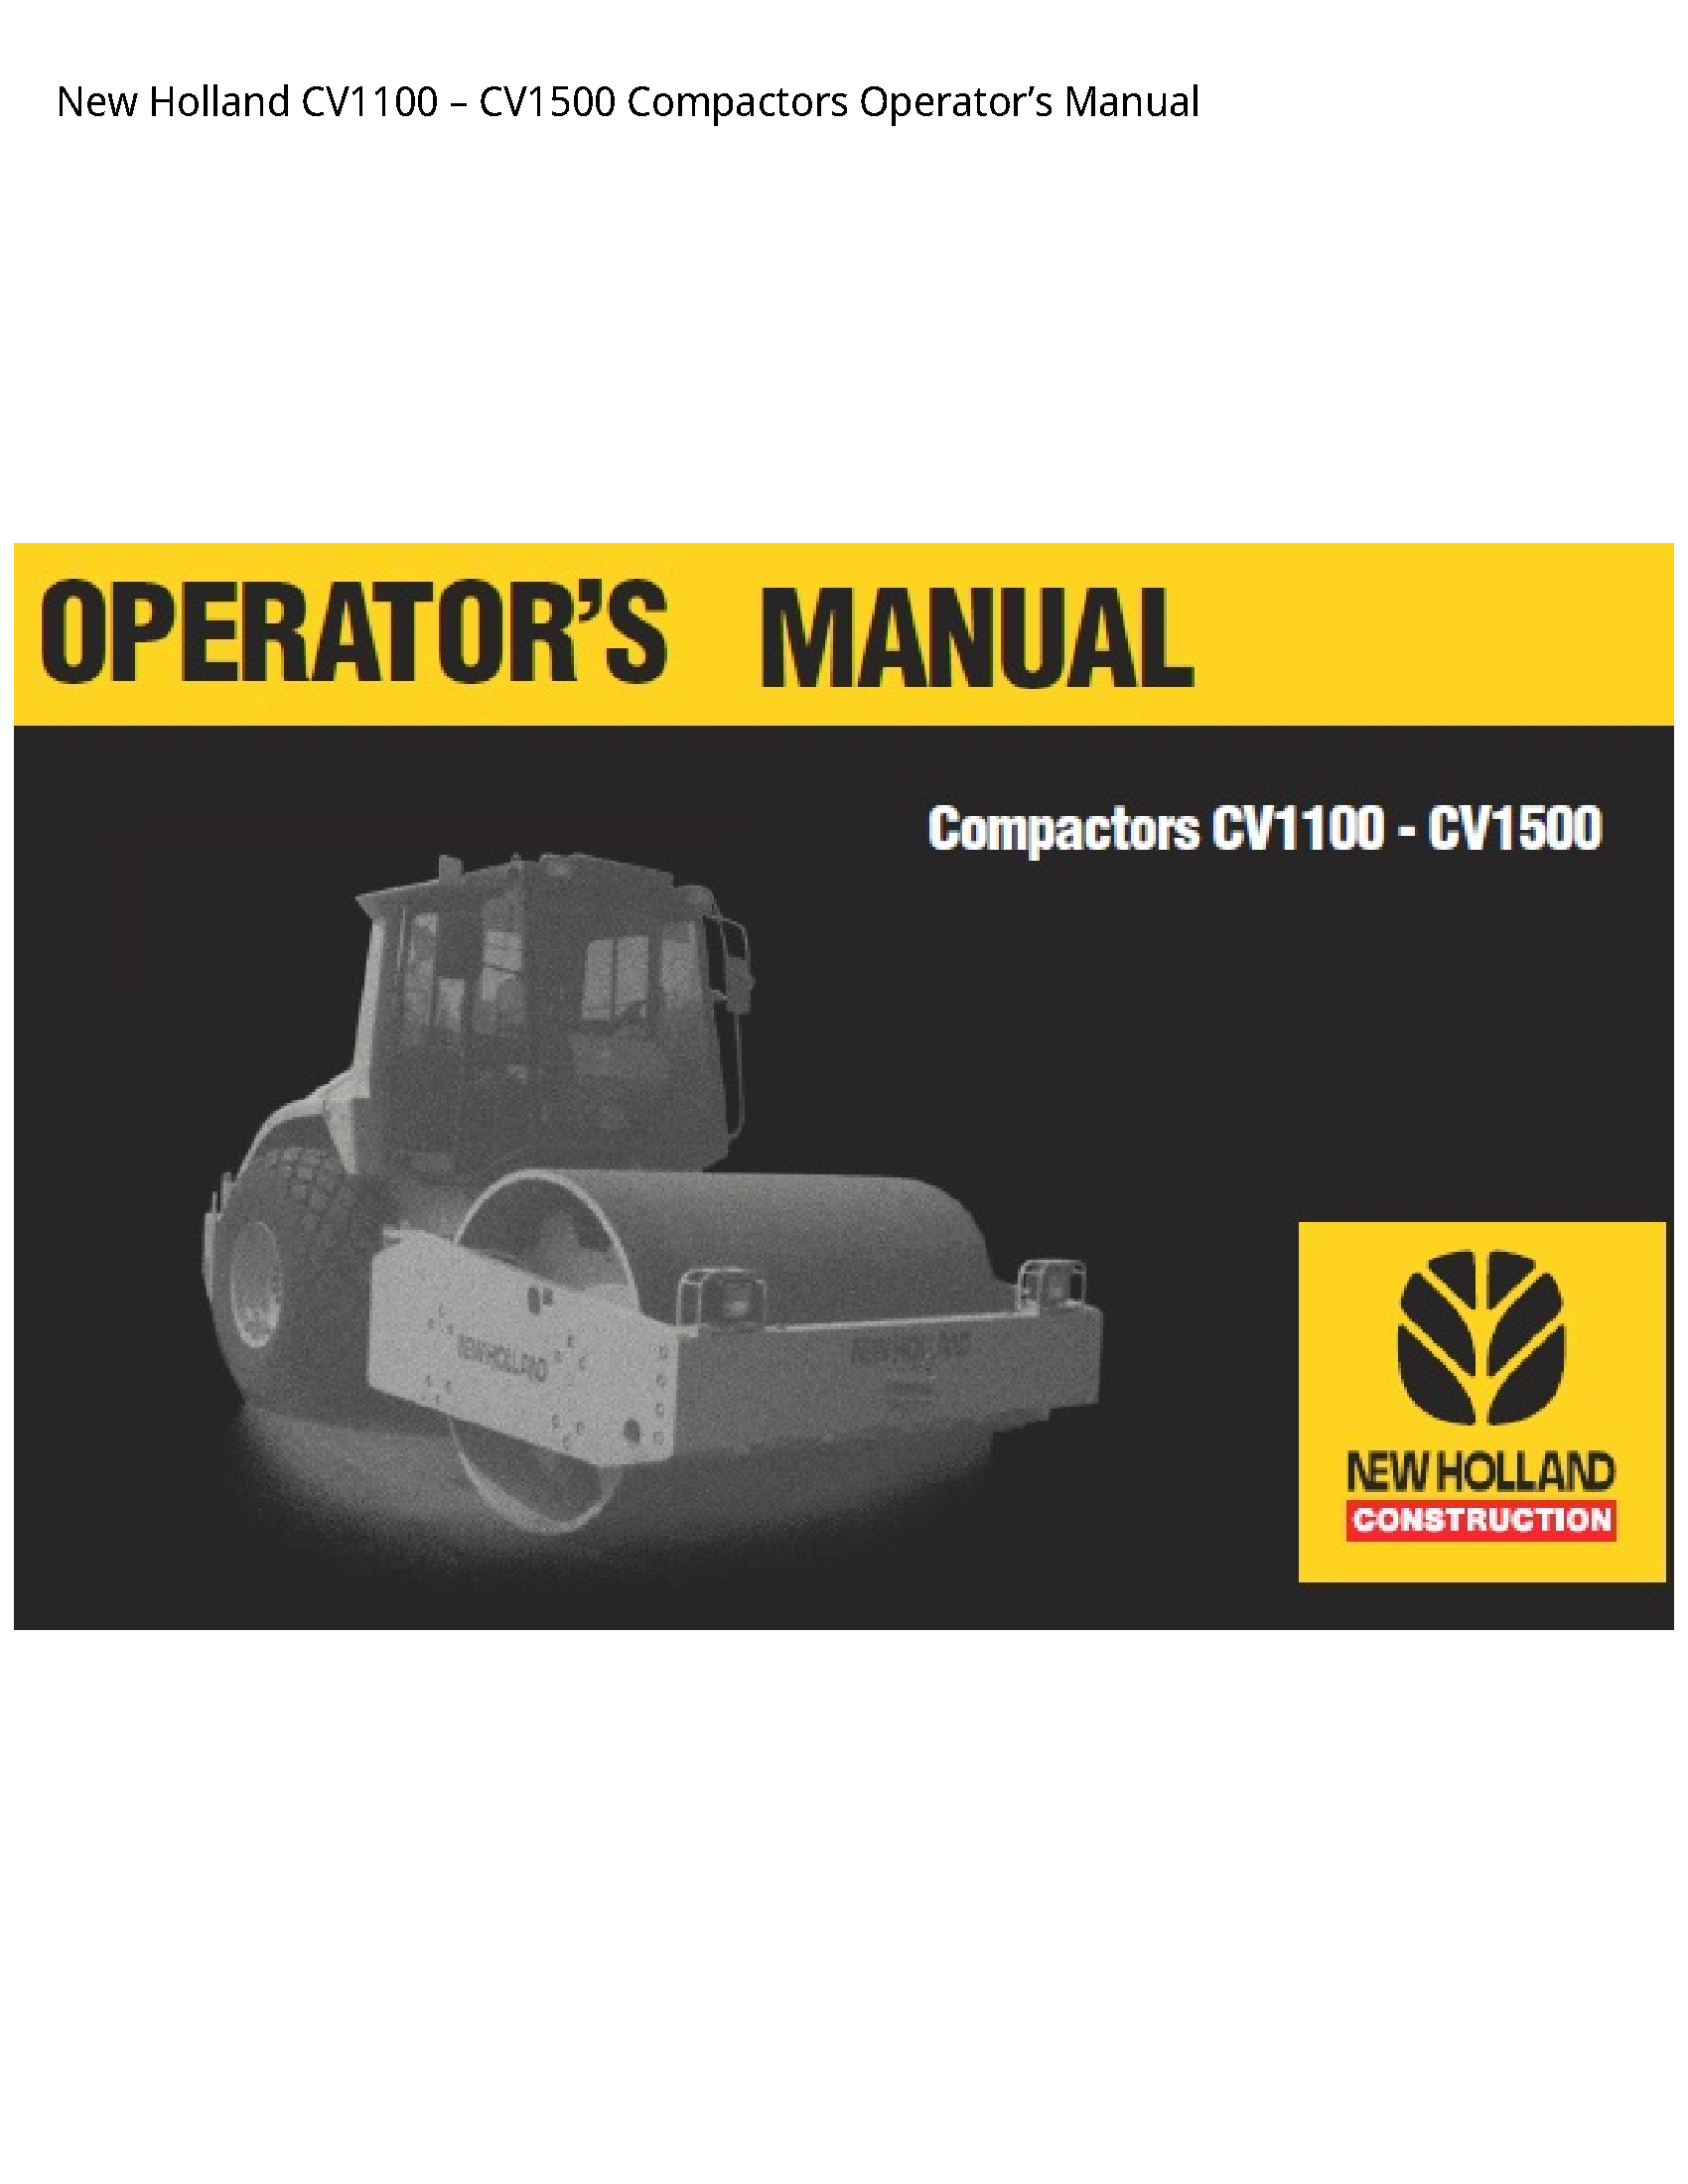 New Holland CV1100 Compactors Operator’s manual